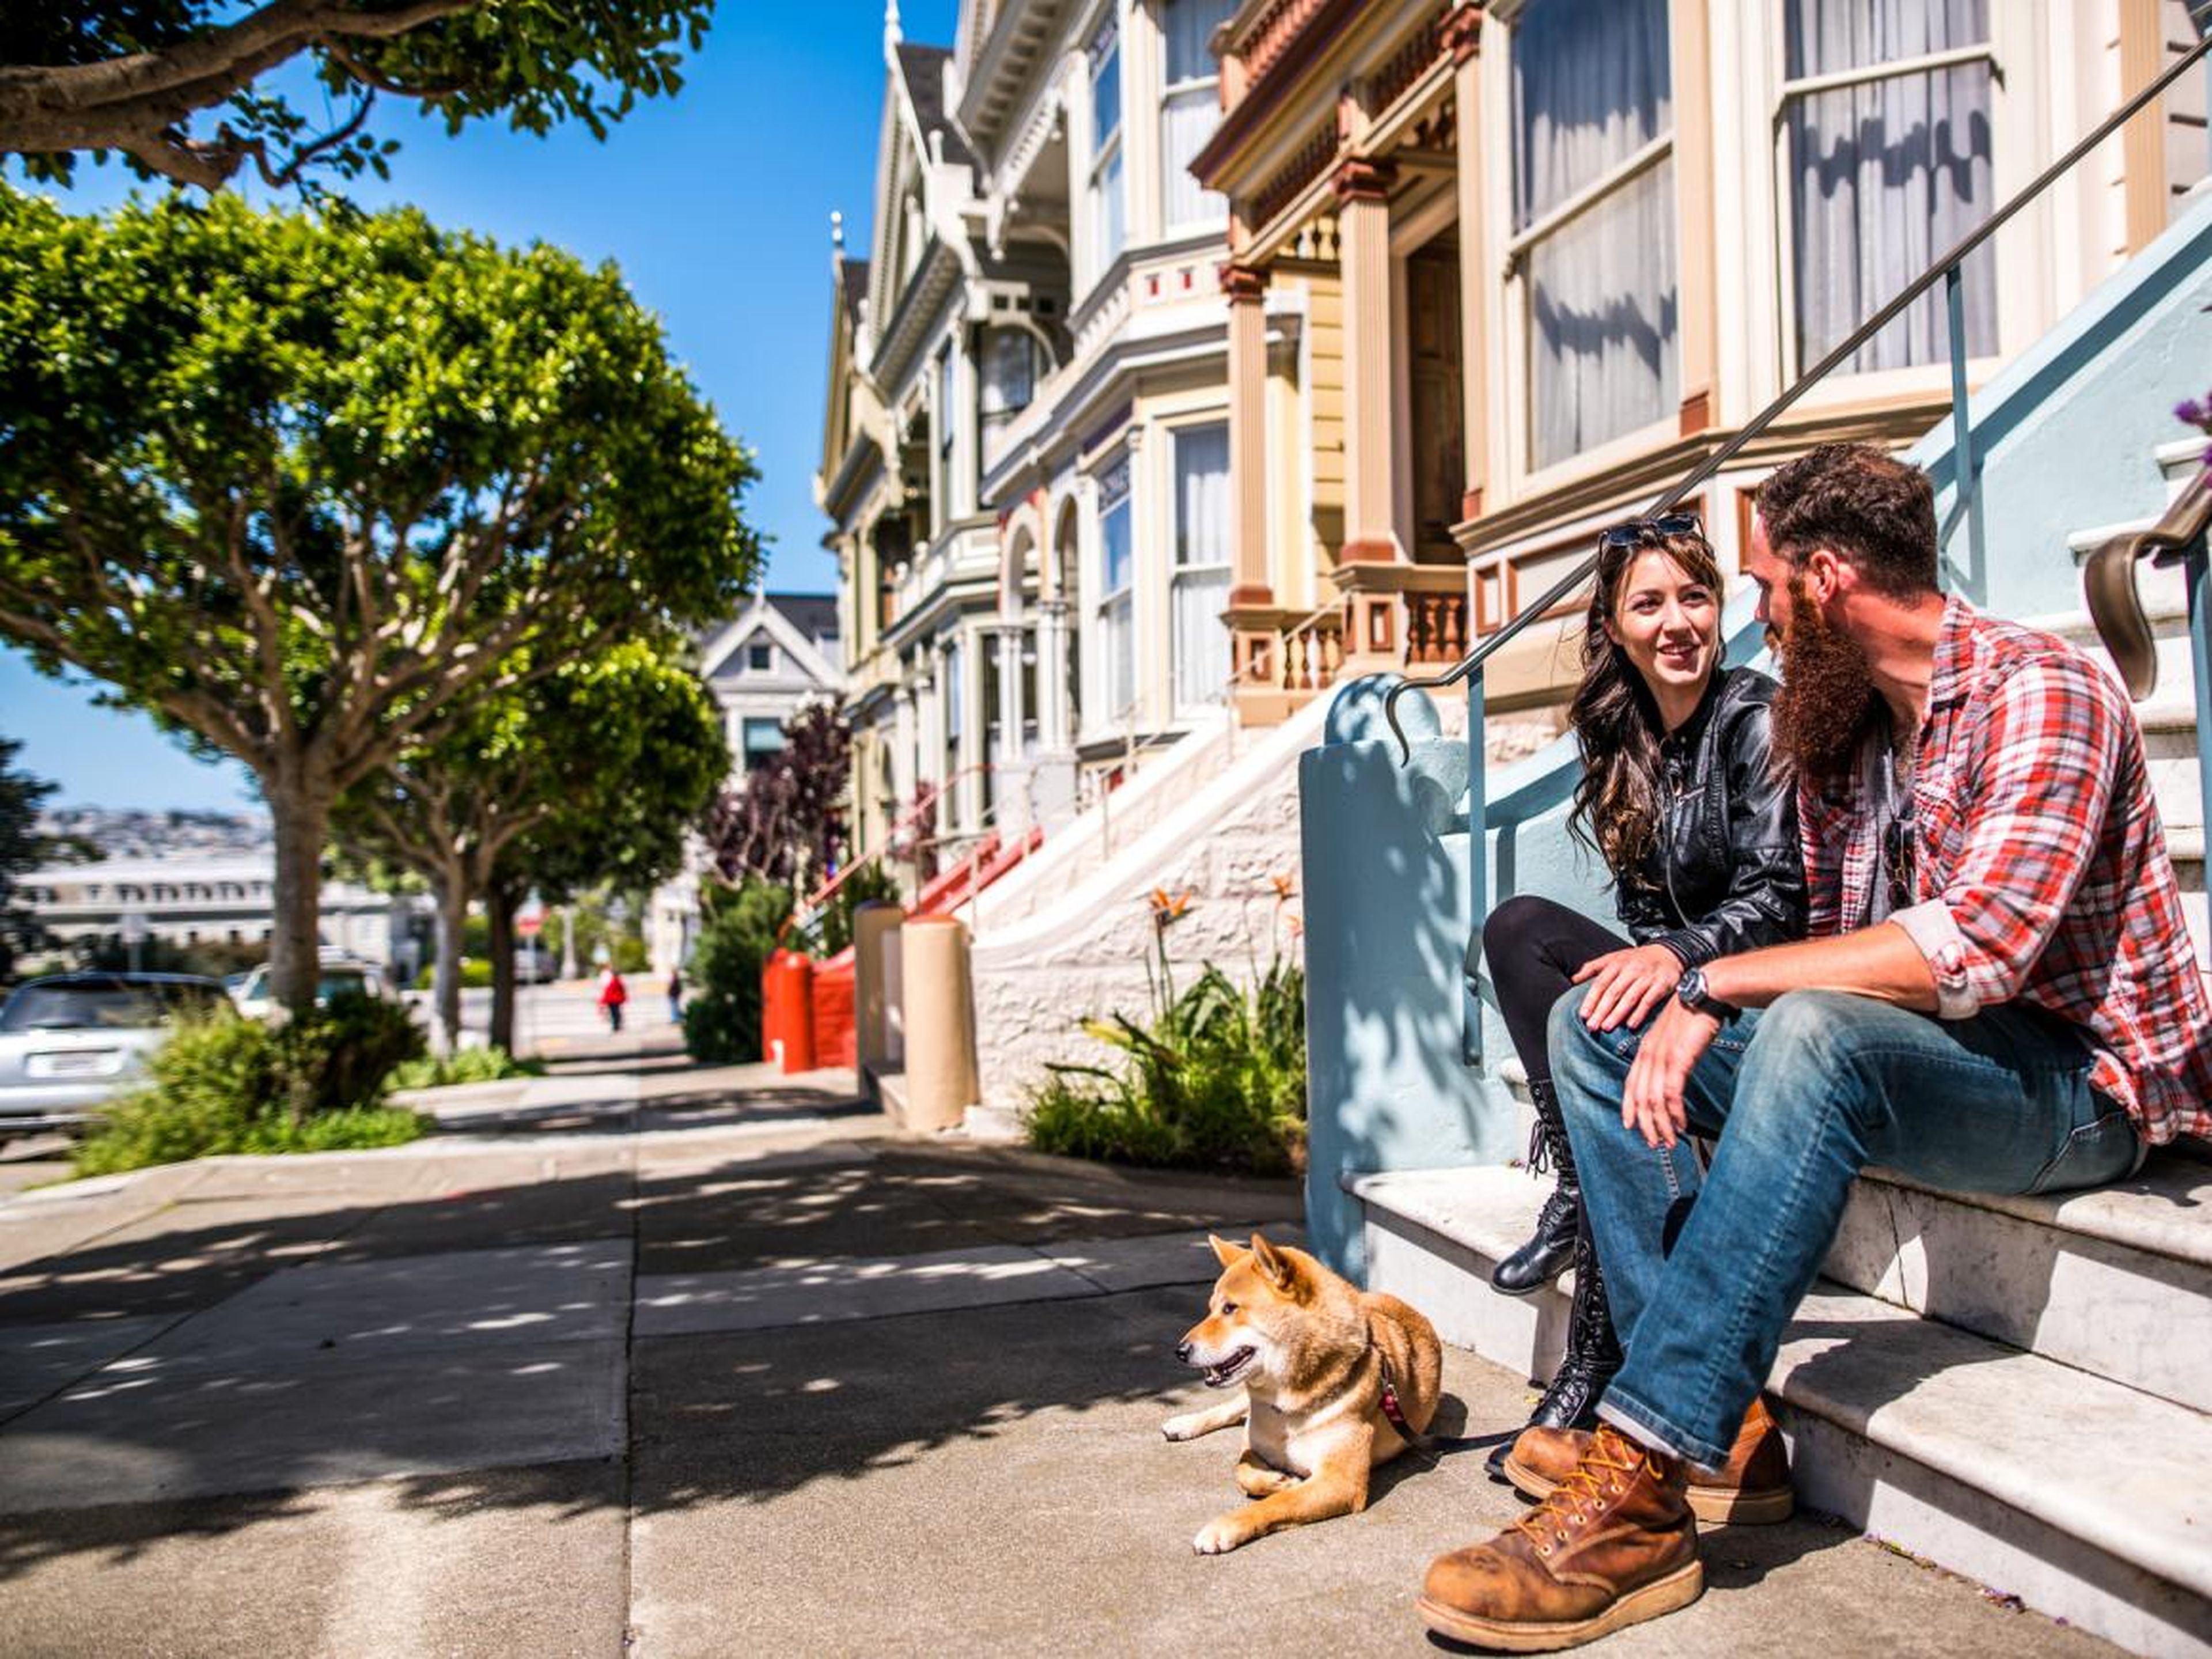 El apartamento más pequeño disponible para alquilar en San Francisco tiene sólo 15 metros cuadrados.